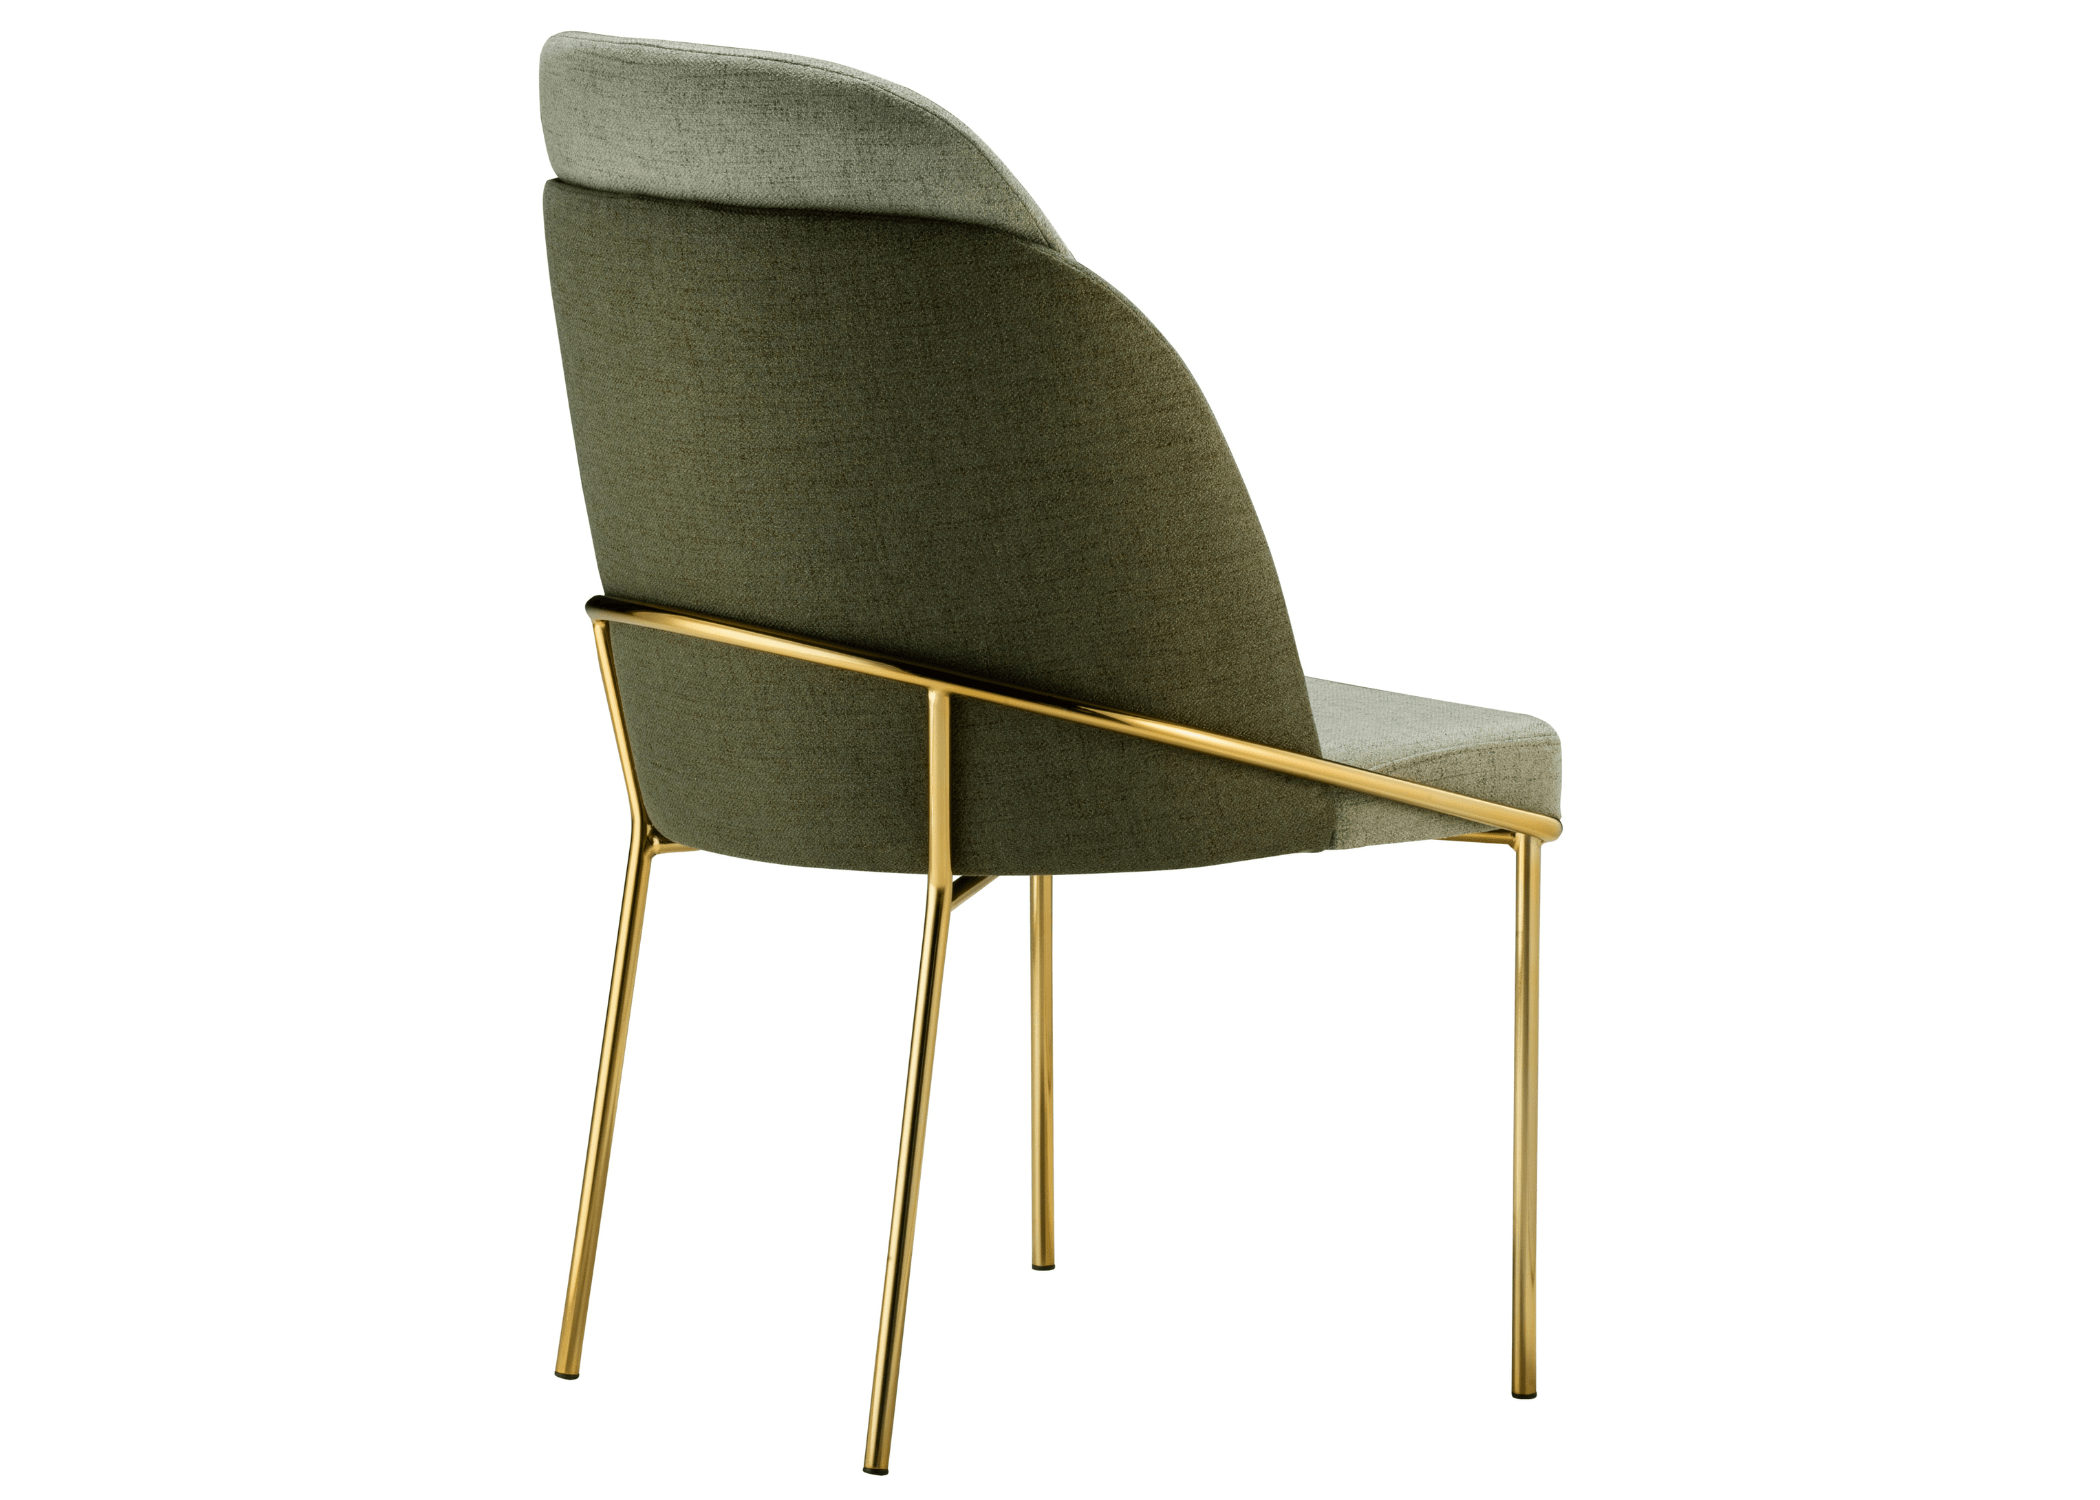 Detalhes do design ergonômico e costuras precisas da Cadeira Green